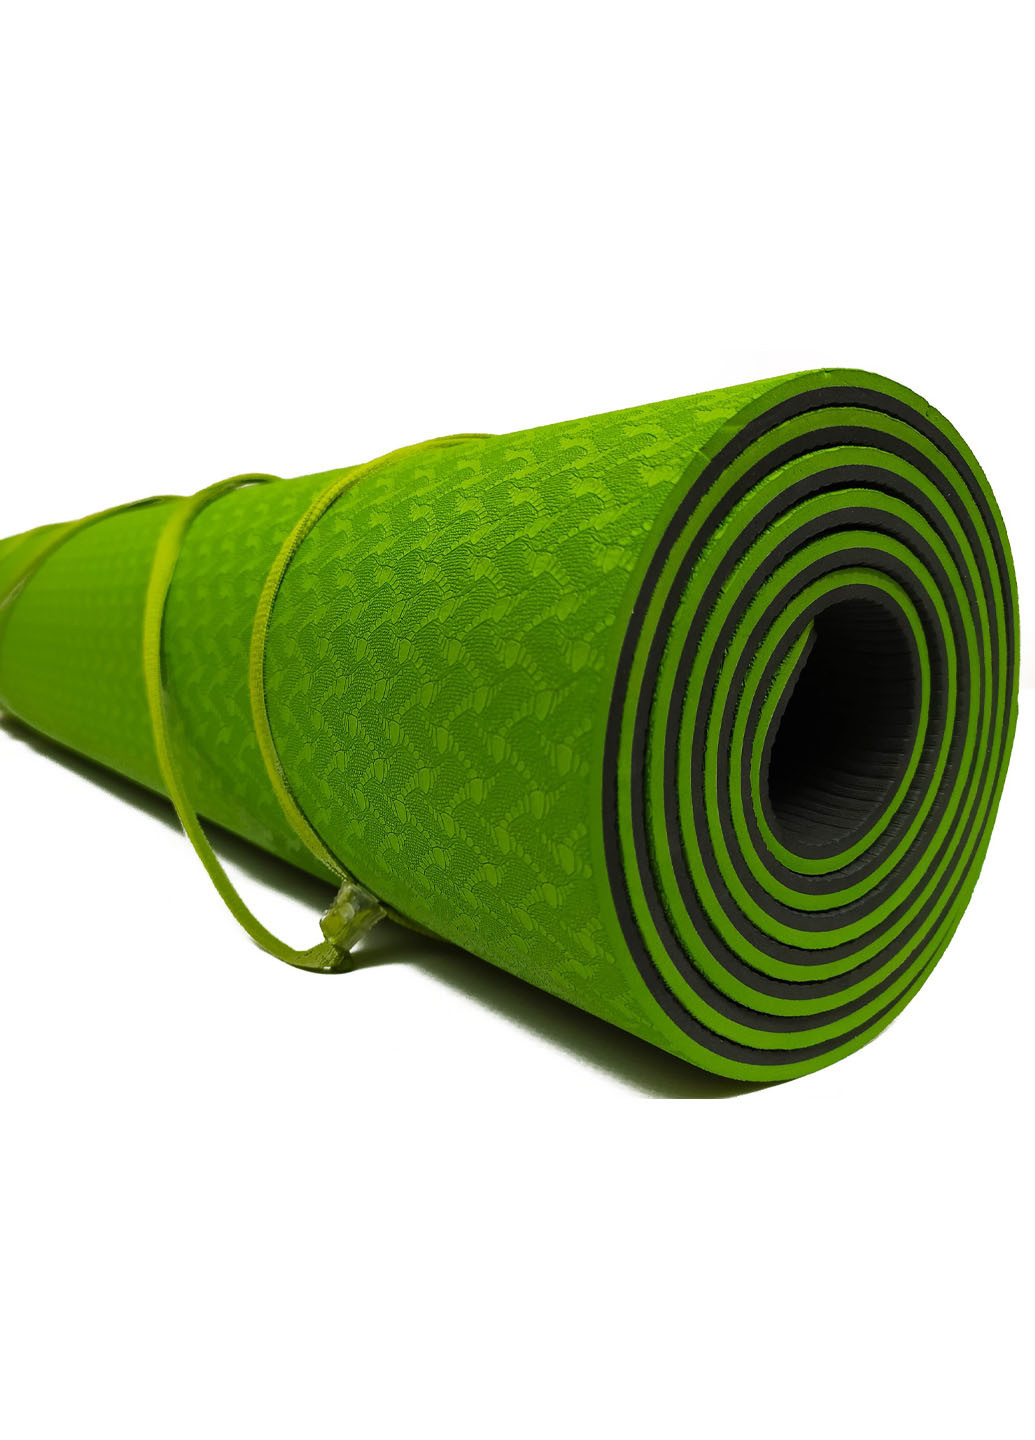 Коврик для йоги TPE+TC 183 х 61 см толщина 6мм двухслойный зеленый-черный (мат-каремат спортивный, йогамат для фитнеса) EasyFit (237596311)